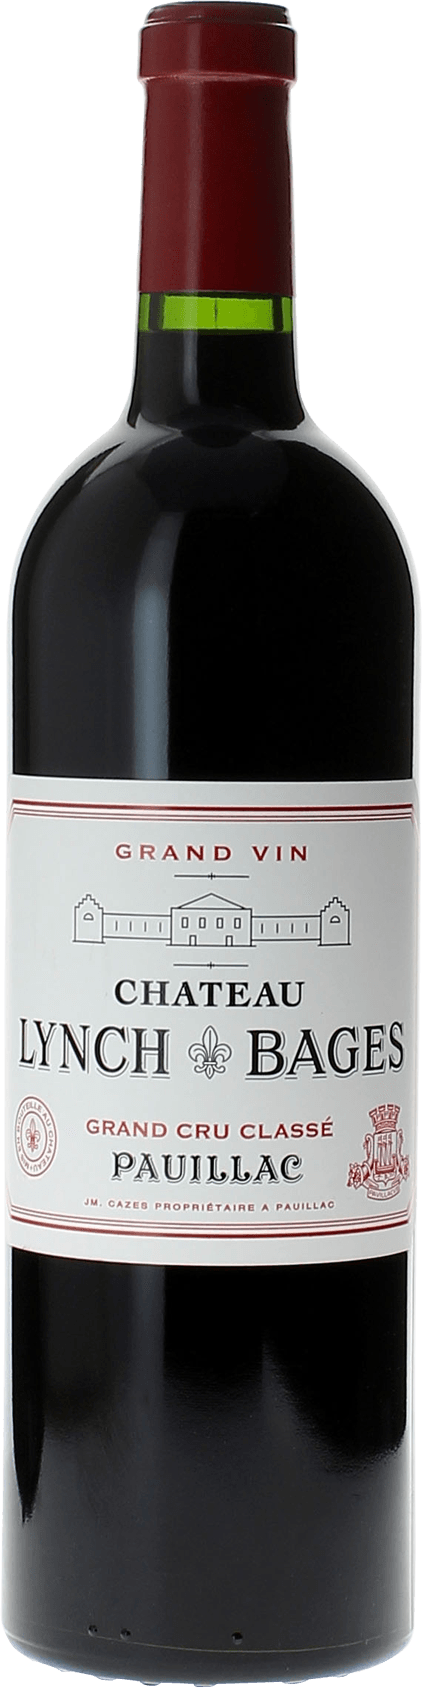 Lynch bages 2004 5 me Grand cru class Pauillac, Bordeaux rouge